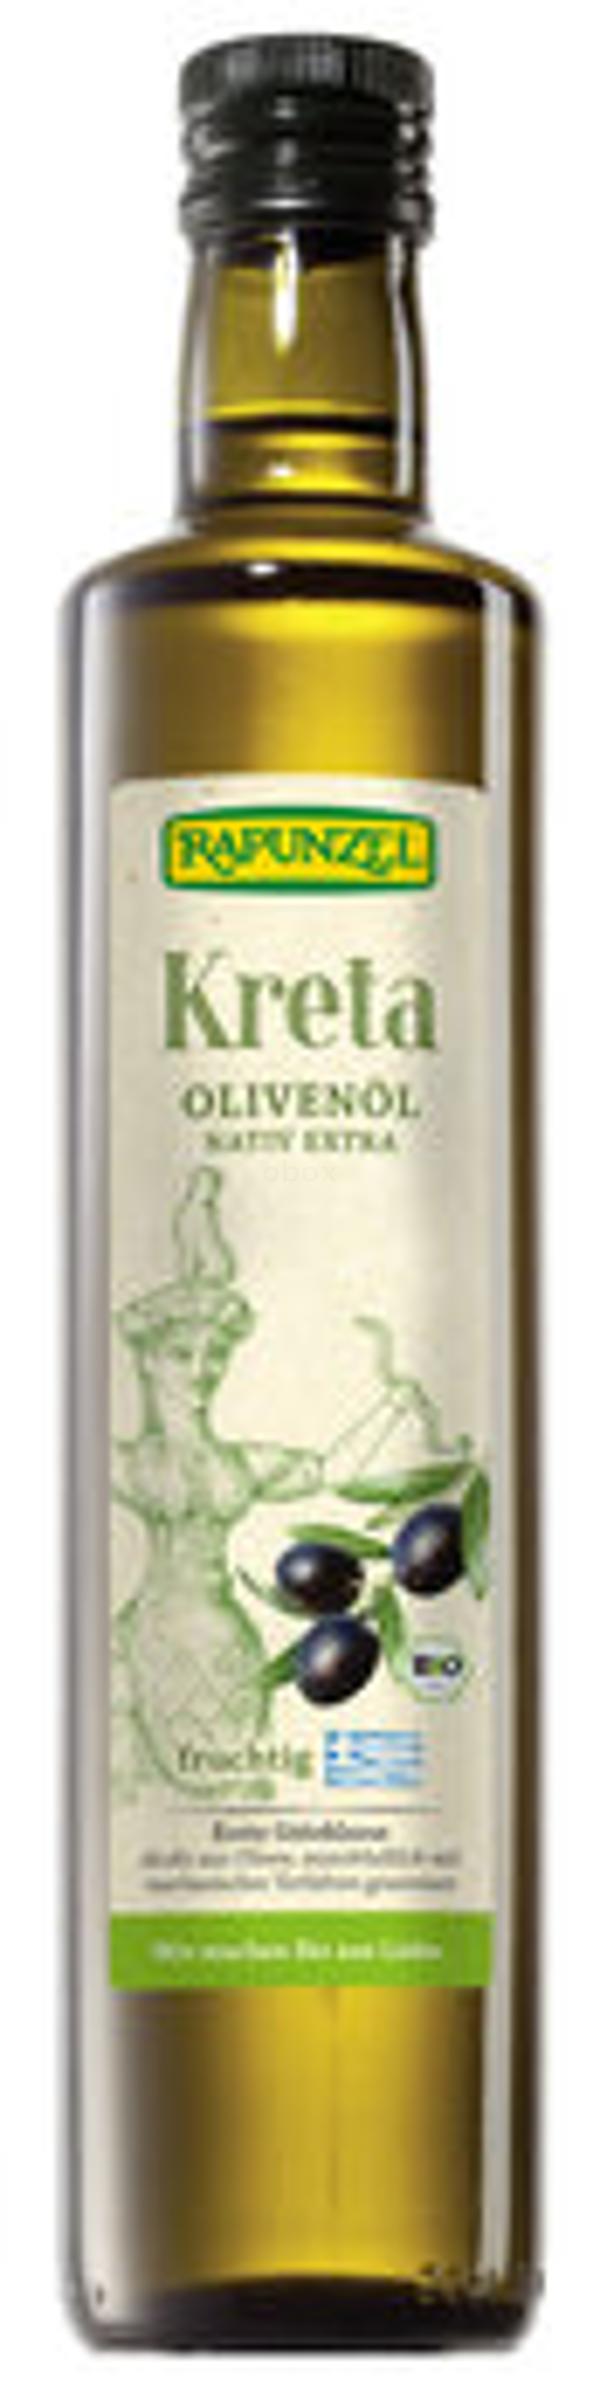 Produktfoto zu Olivenöl Kreta nativ extra, 0,5 l